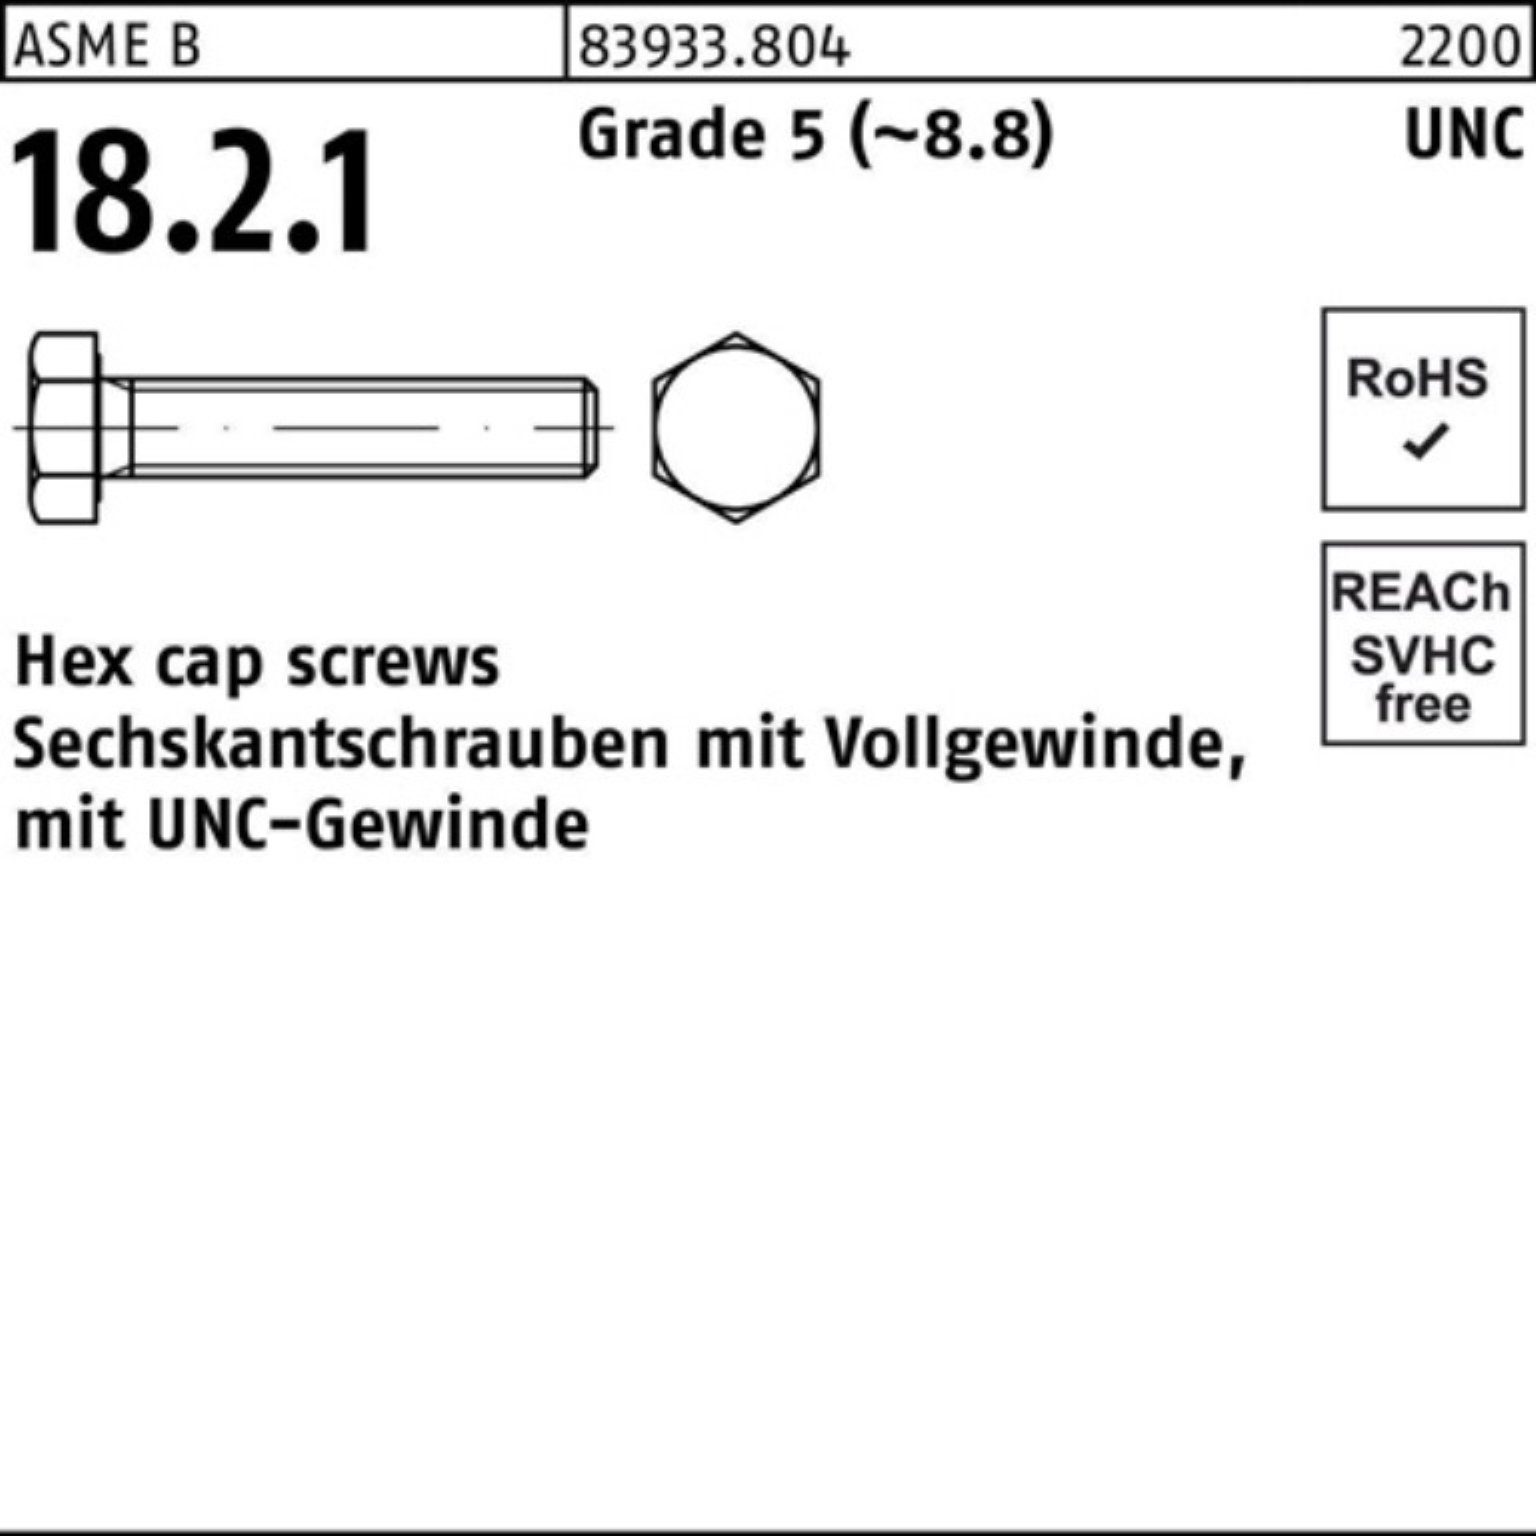 Reyher Sechskantschraube 100er Pack Sechskantschraube R 83933 UNC-Gewinde VG 3/4x 2 Grade 5 (8